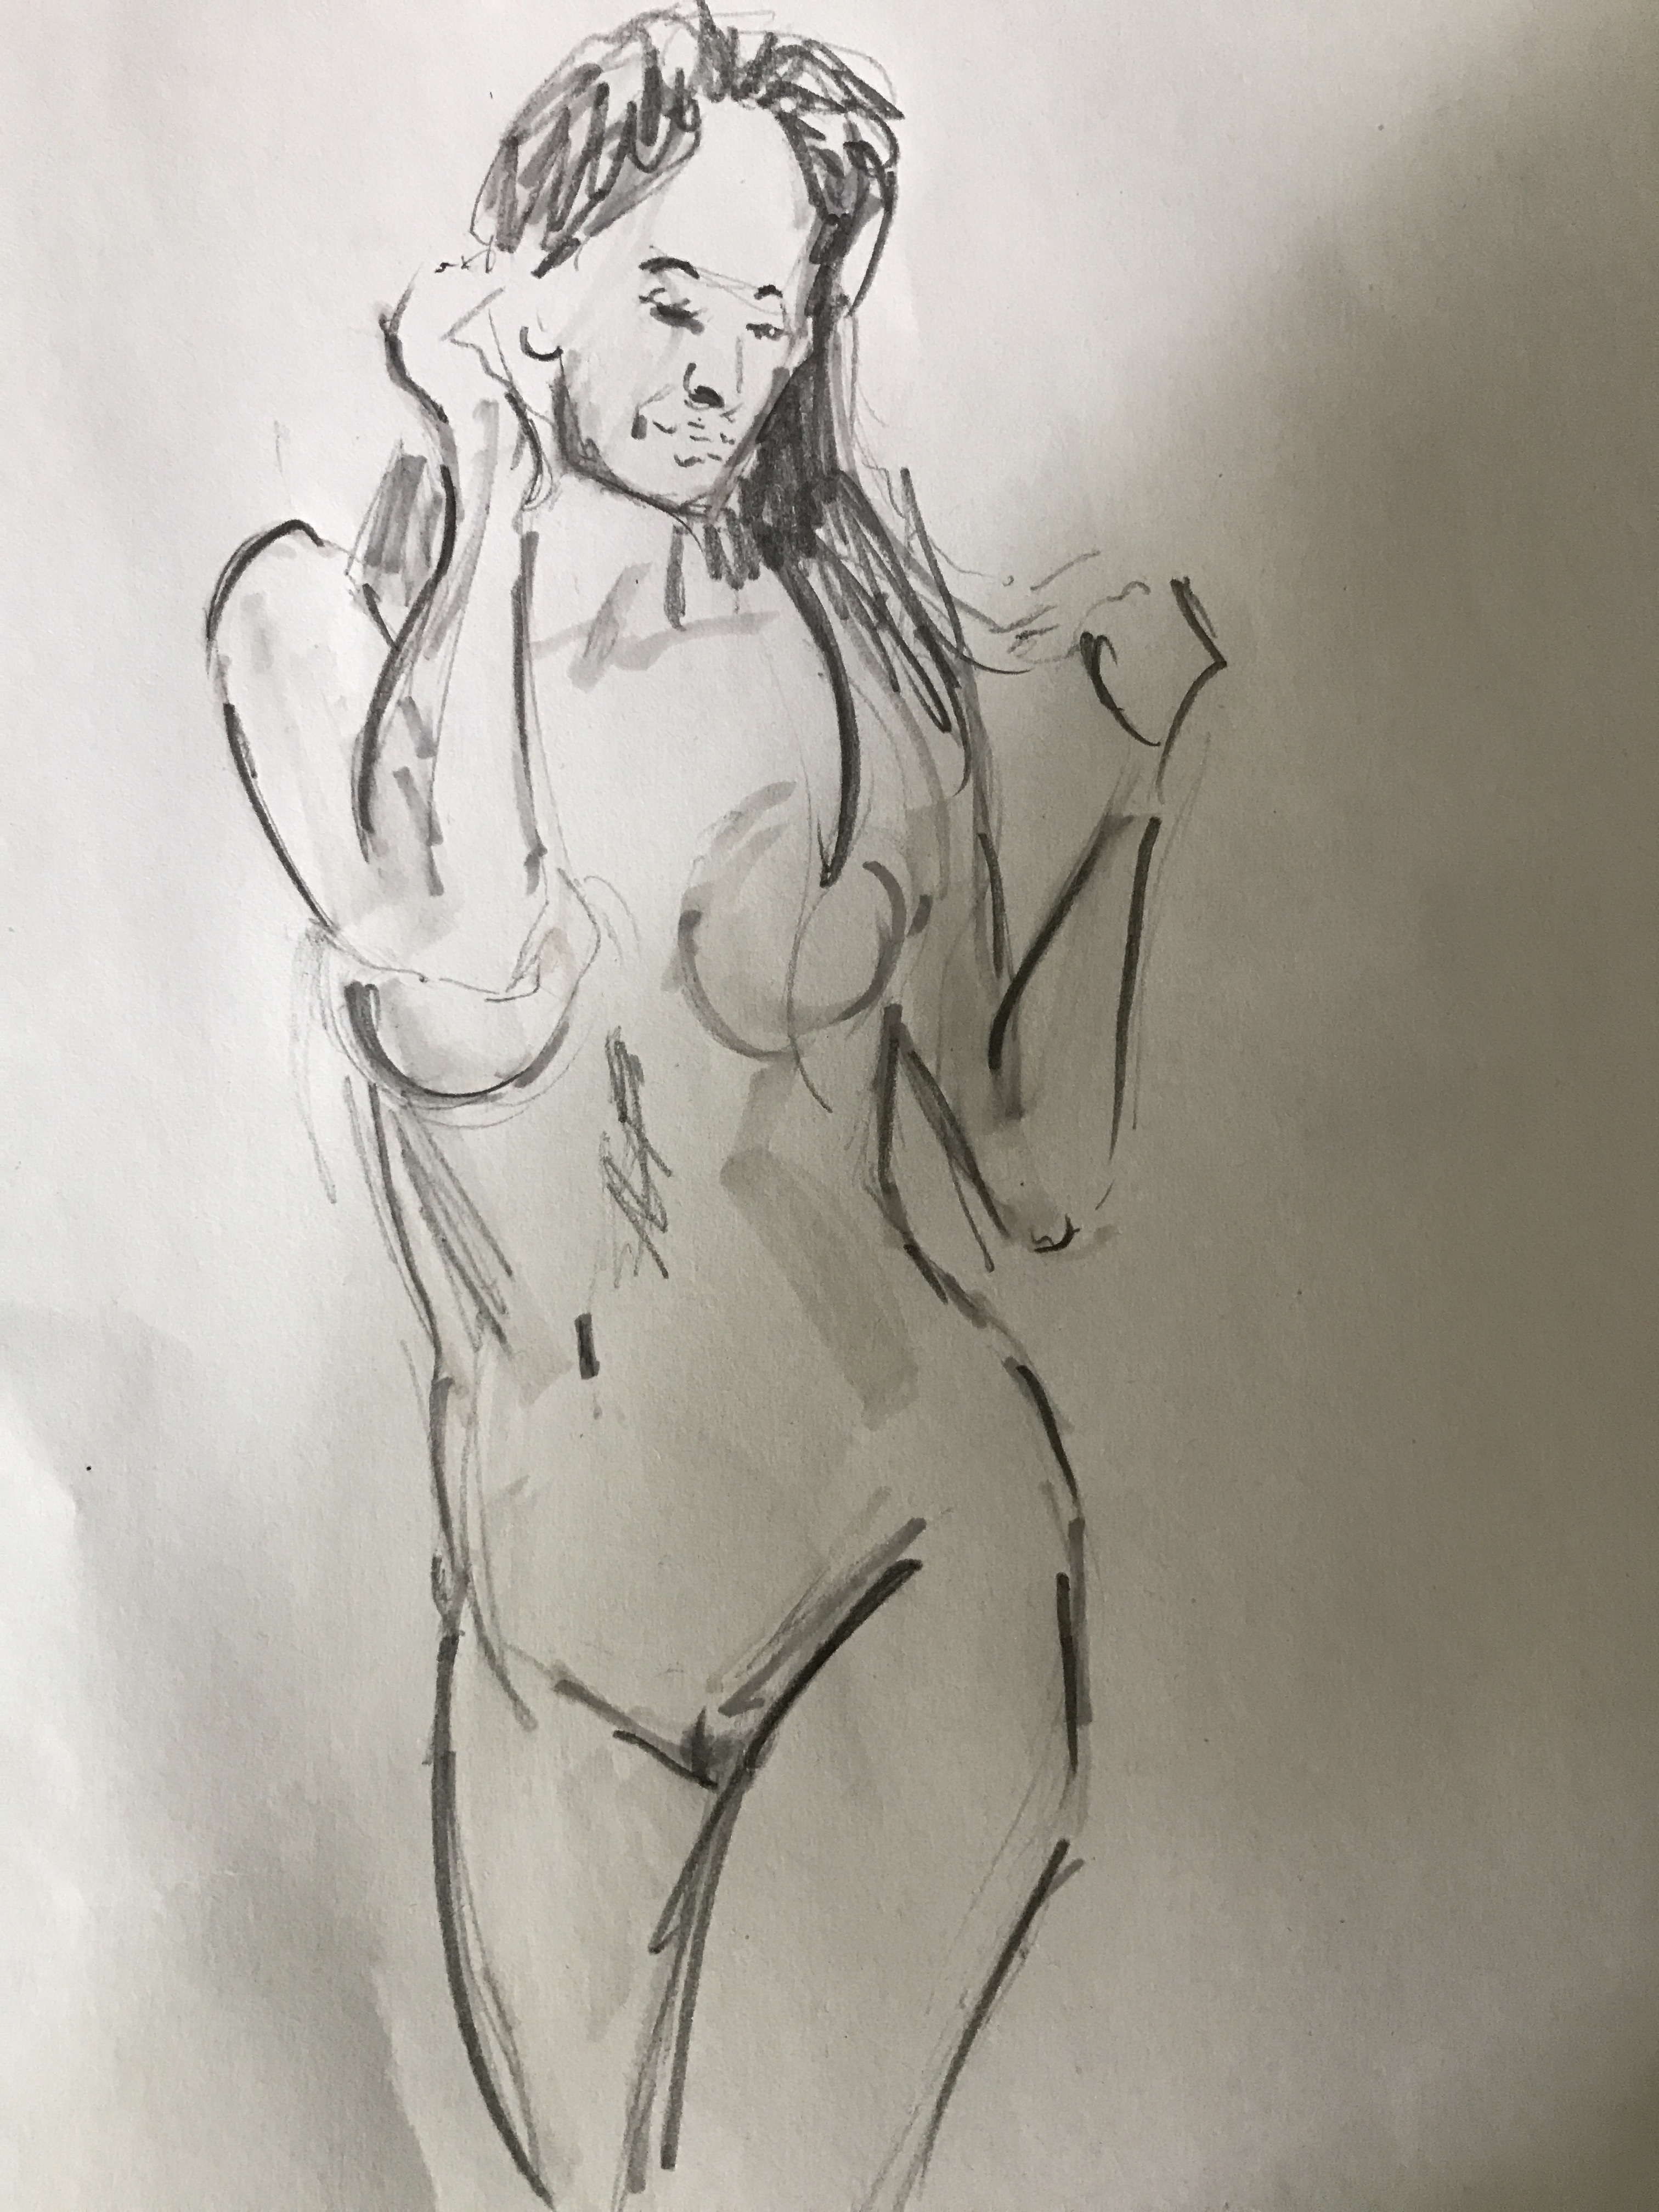  Dessin buste femme technique mixte crayon papier et feutre a alcool rÃ©alisÃ© dans nos cours de dessin  cours de dessin 